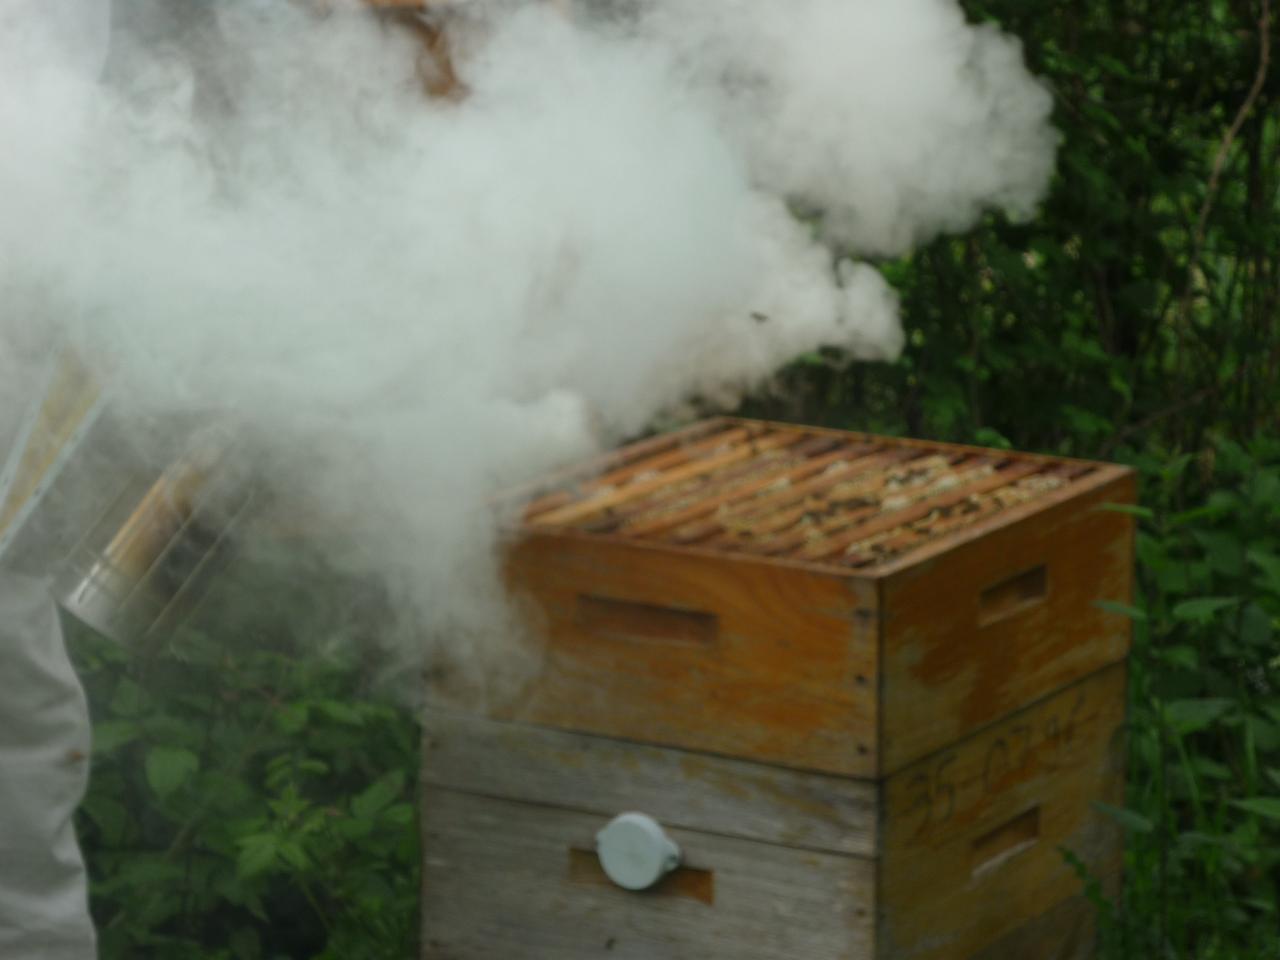 Enfumage des abeilles